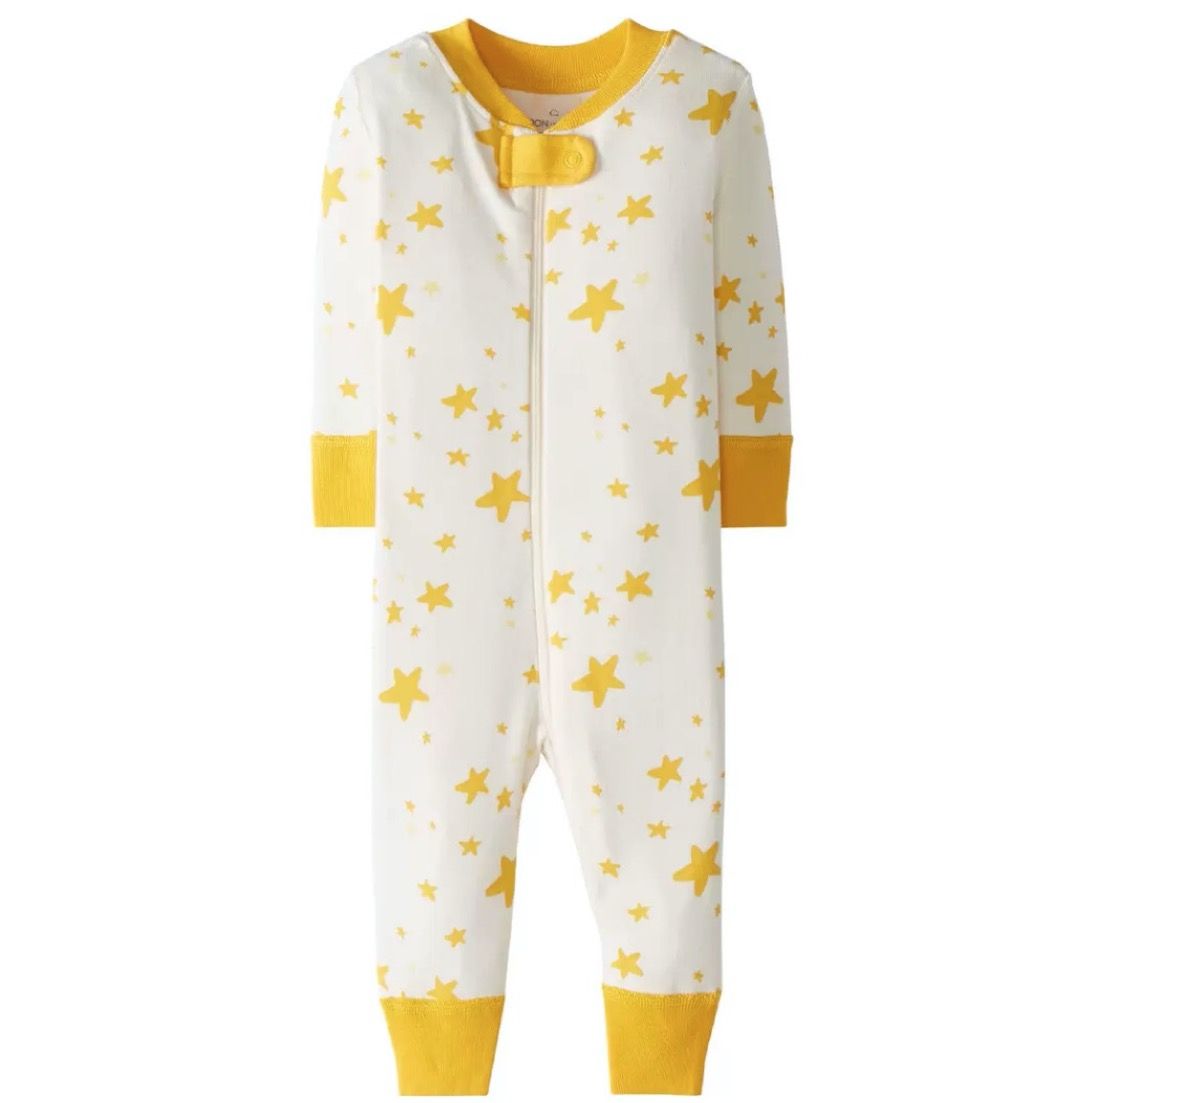 bộ đồ ngủ có dây kéo màu trắng và vàng với những ngôi sao